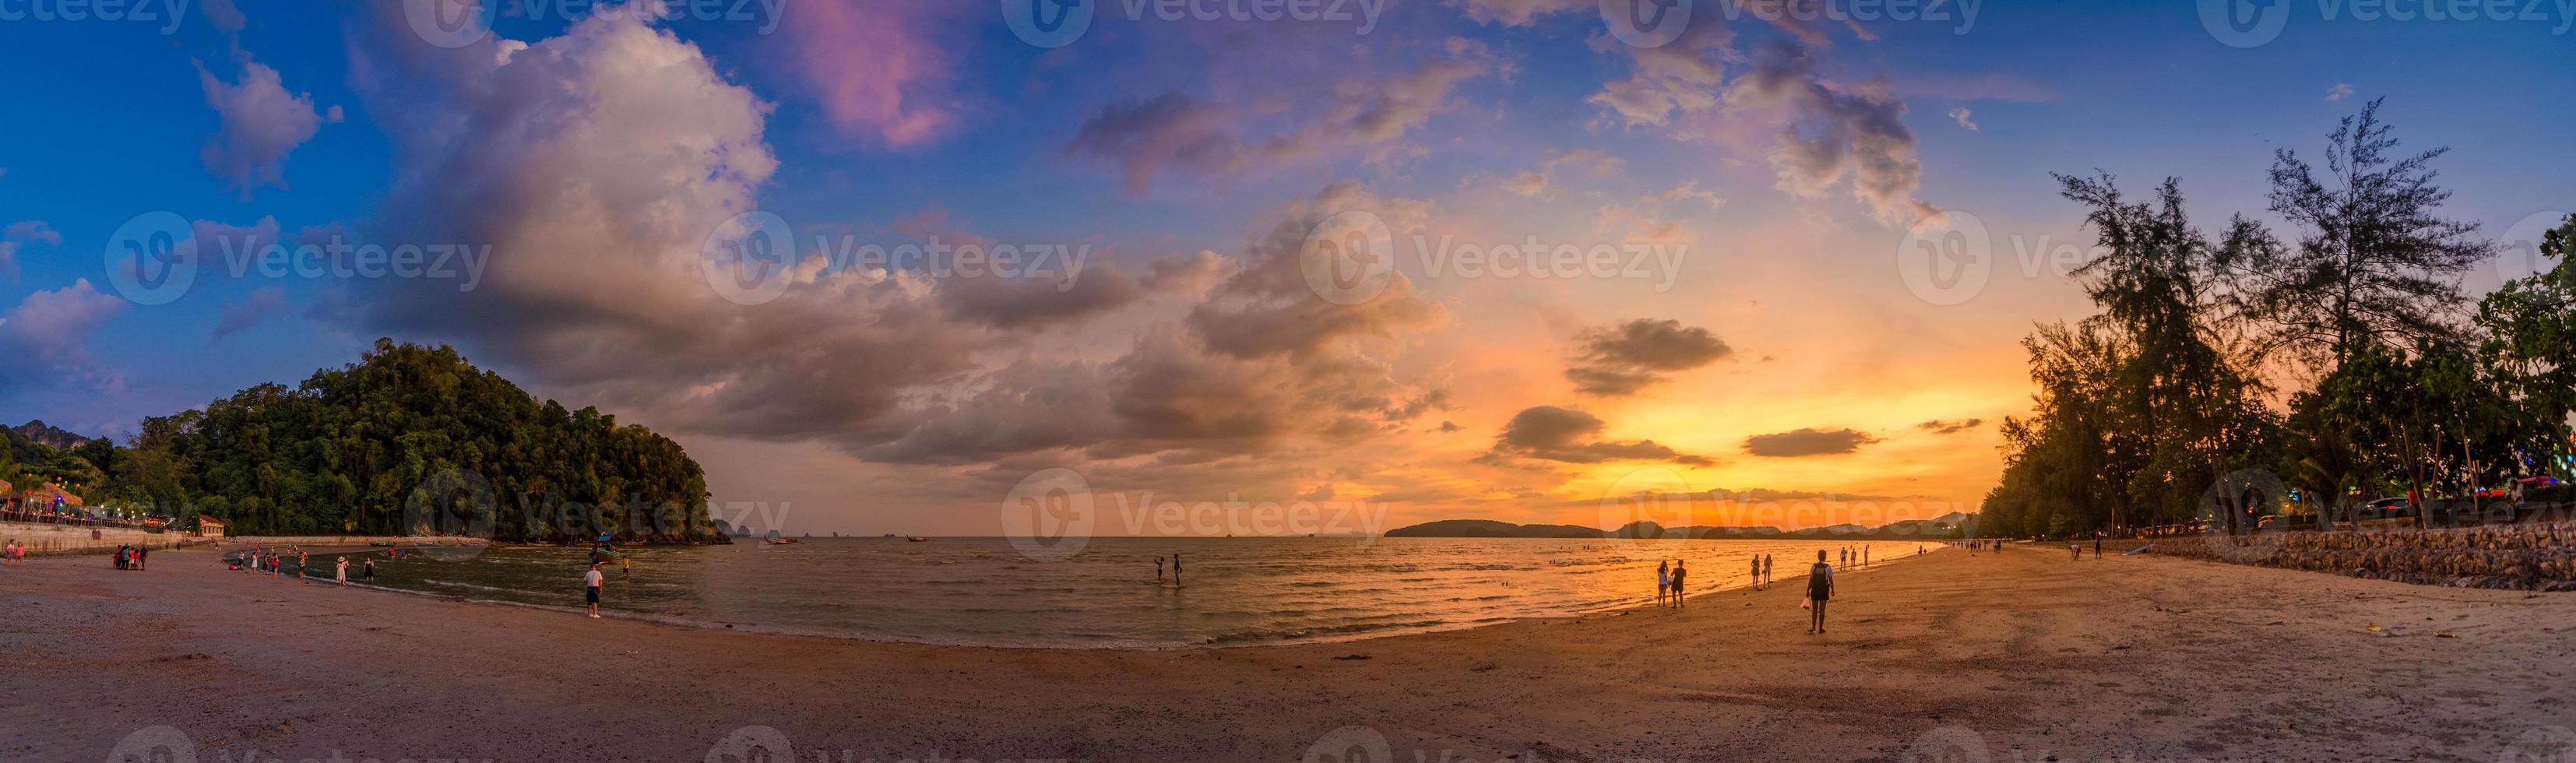 ao nang krabi thailandia la spiaggia è piena di gente la sera. foto panoramica a luce dorata